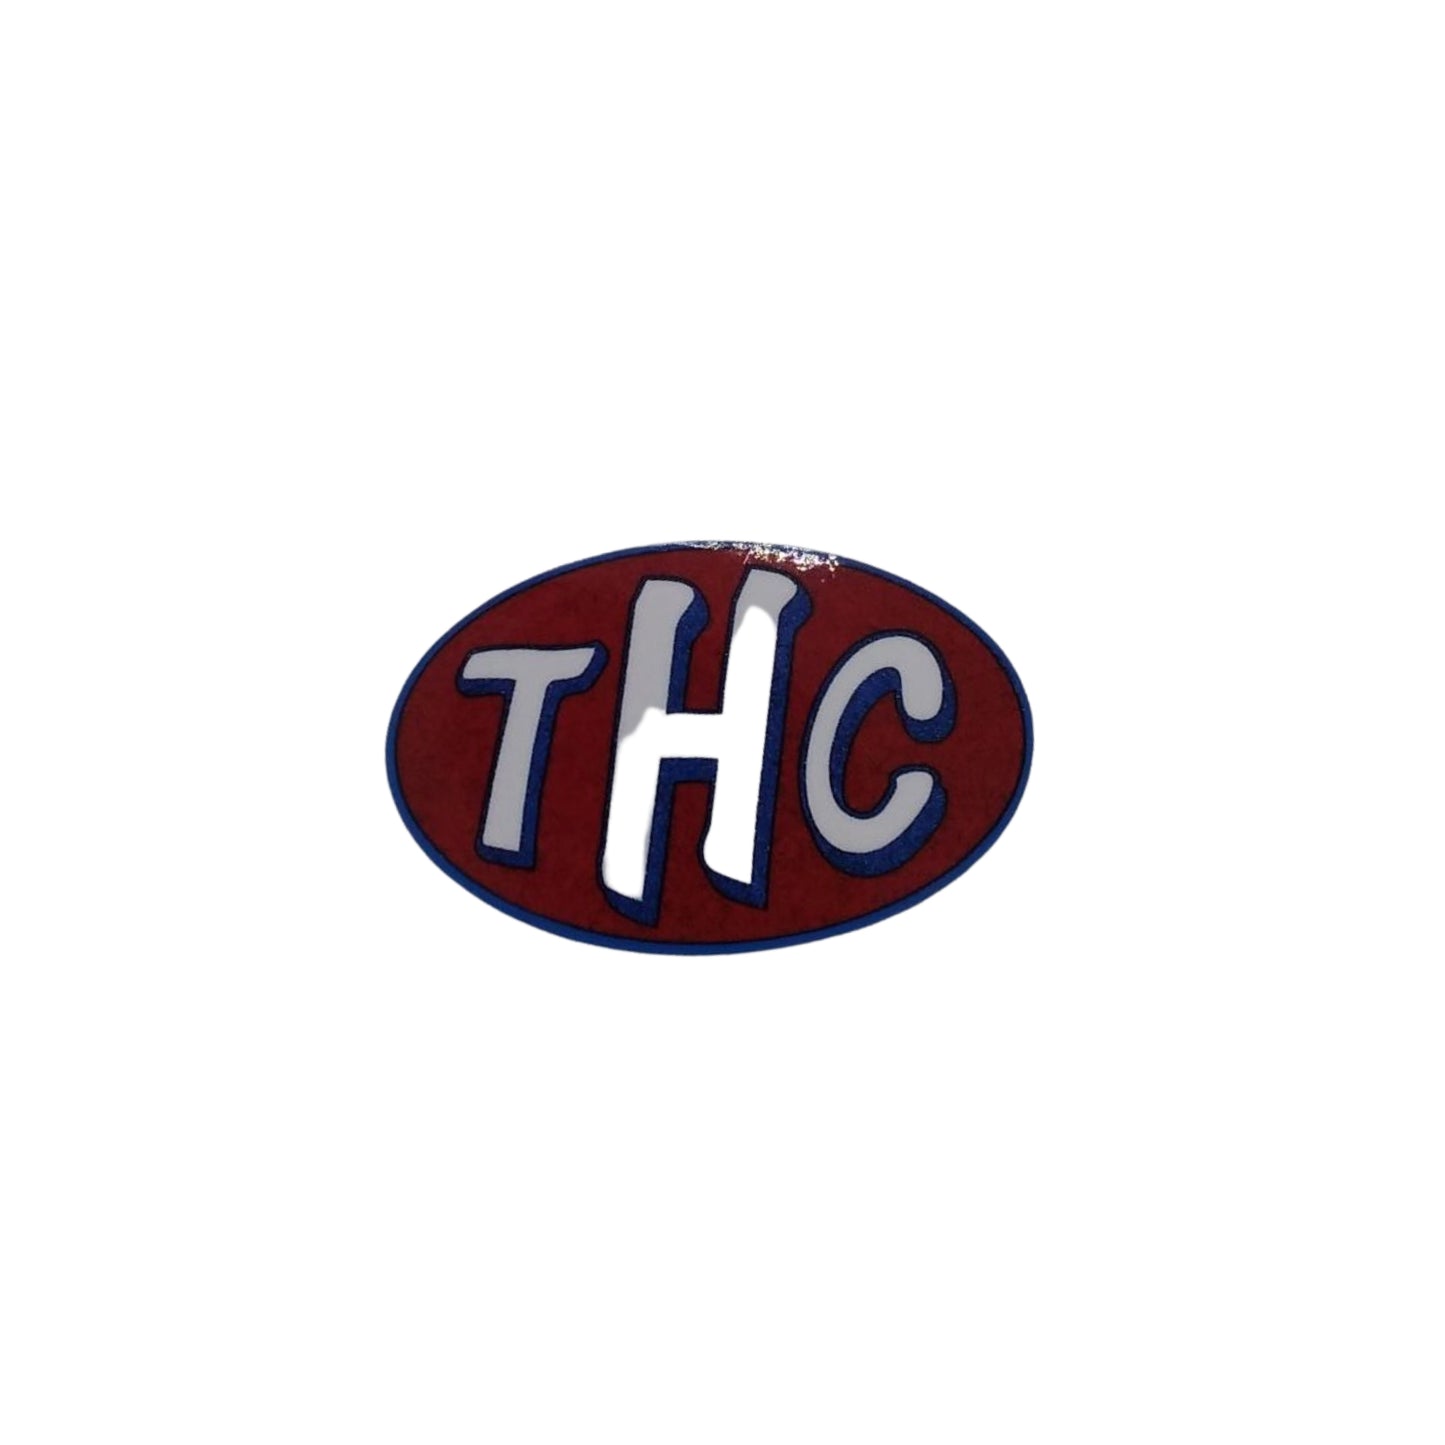 THC - Sticker